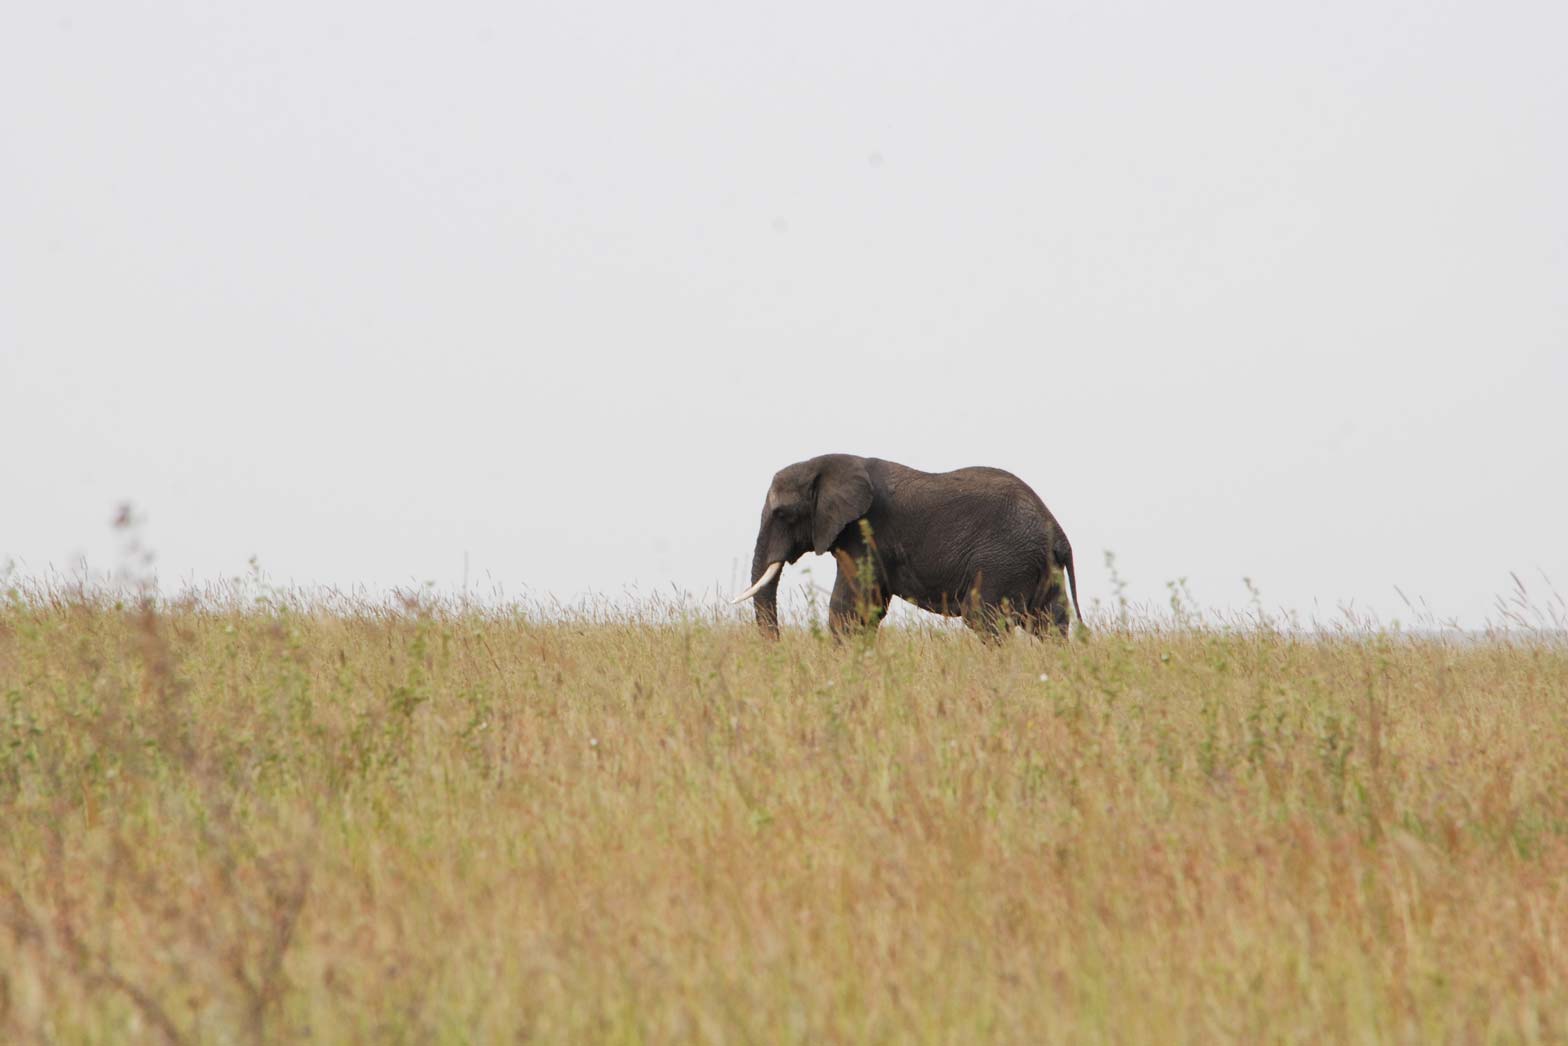 A lone elephant